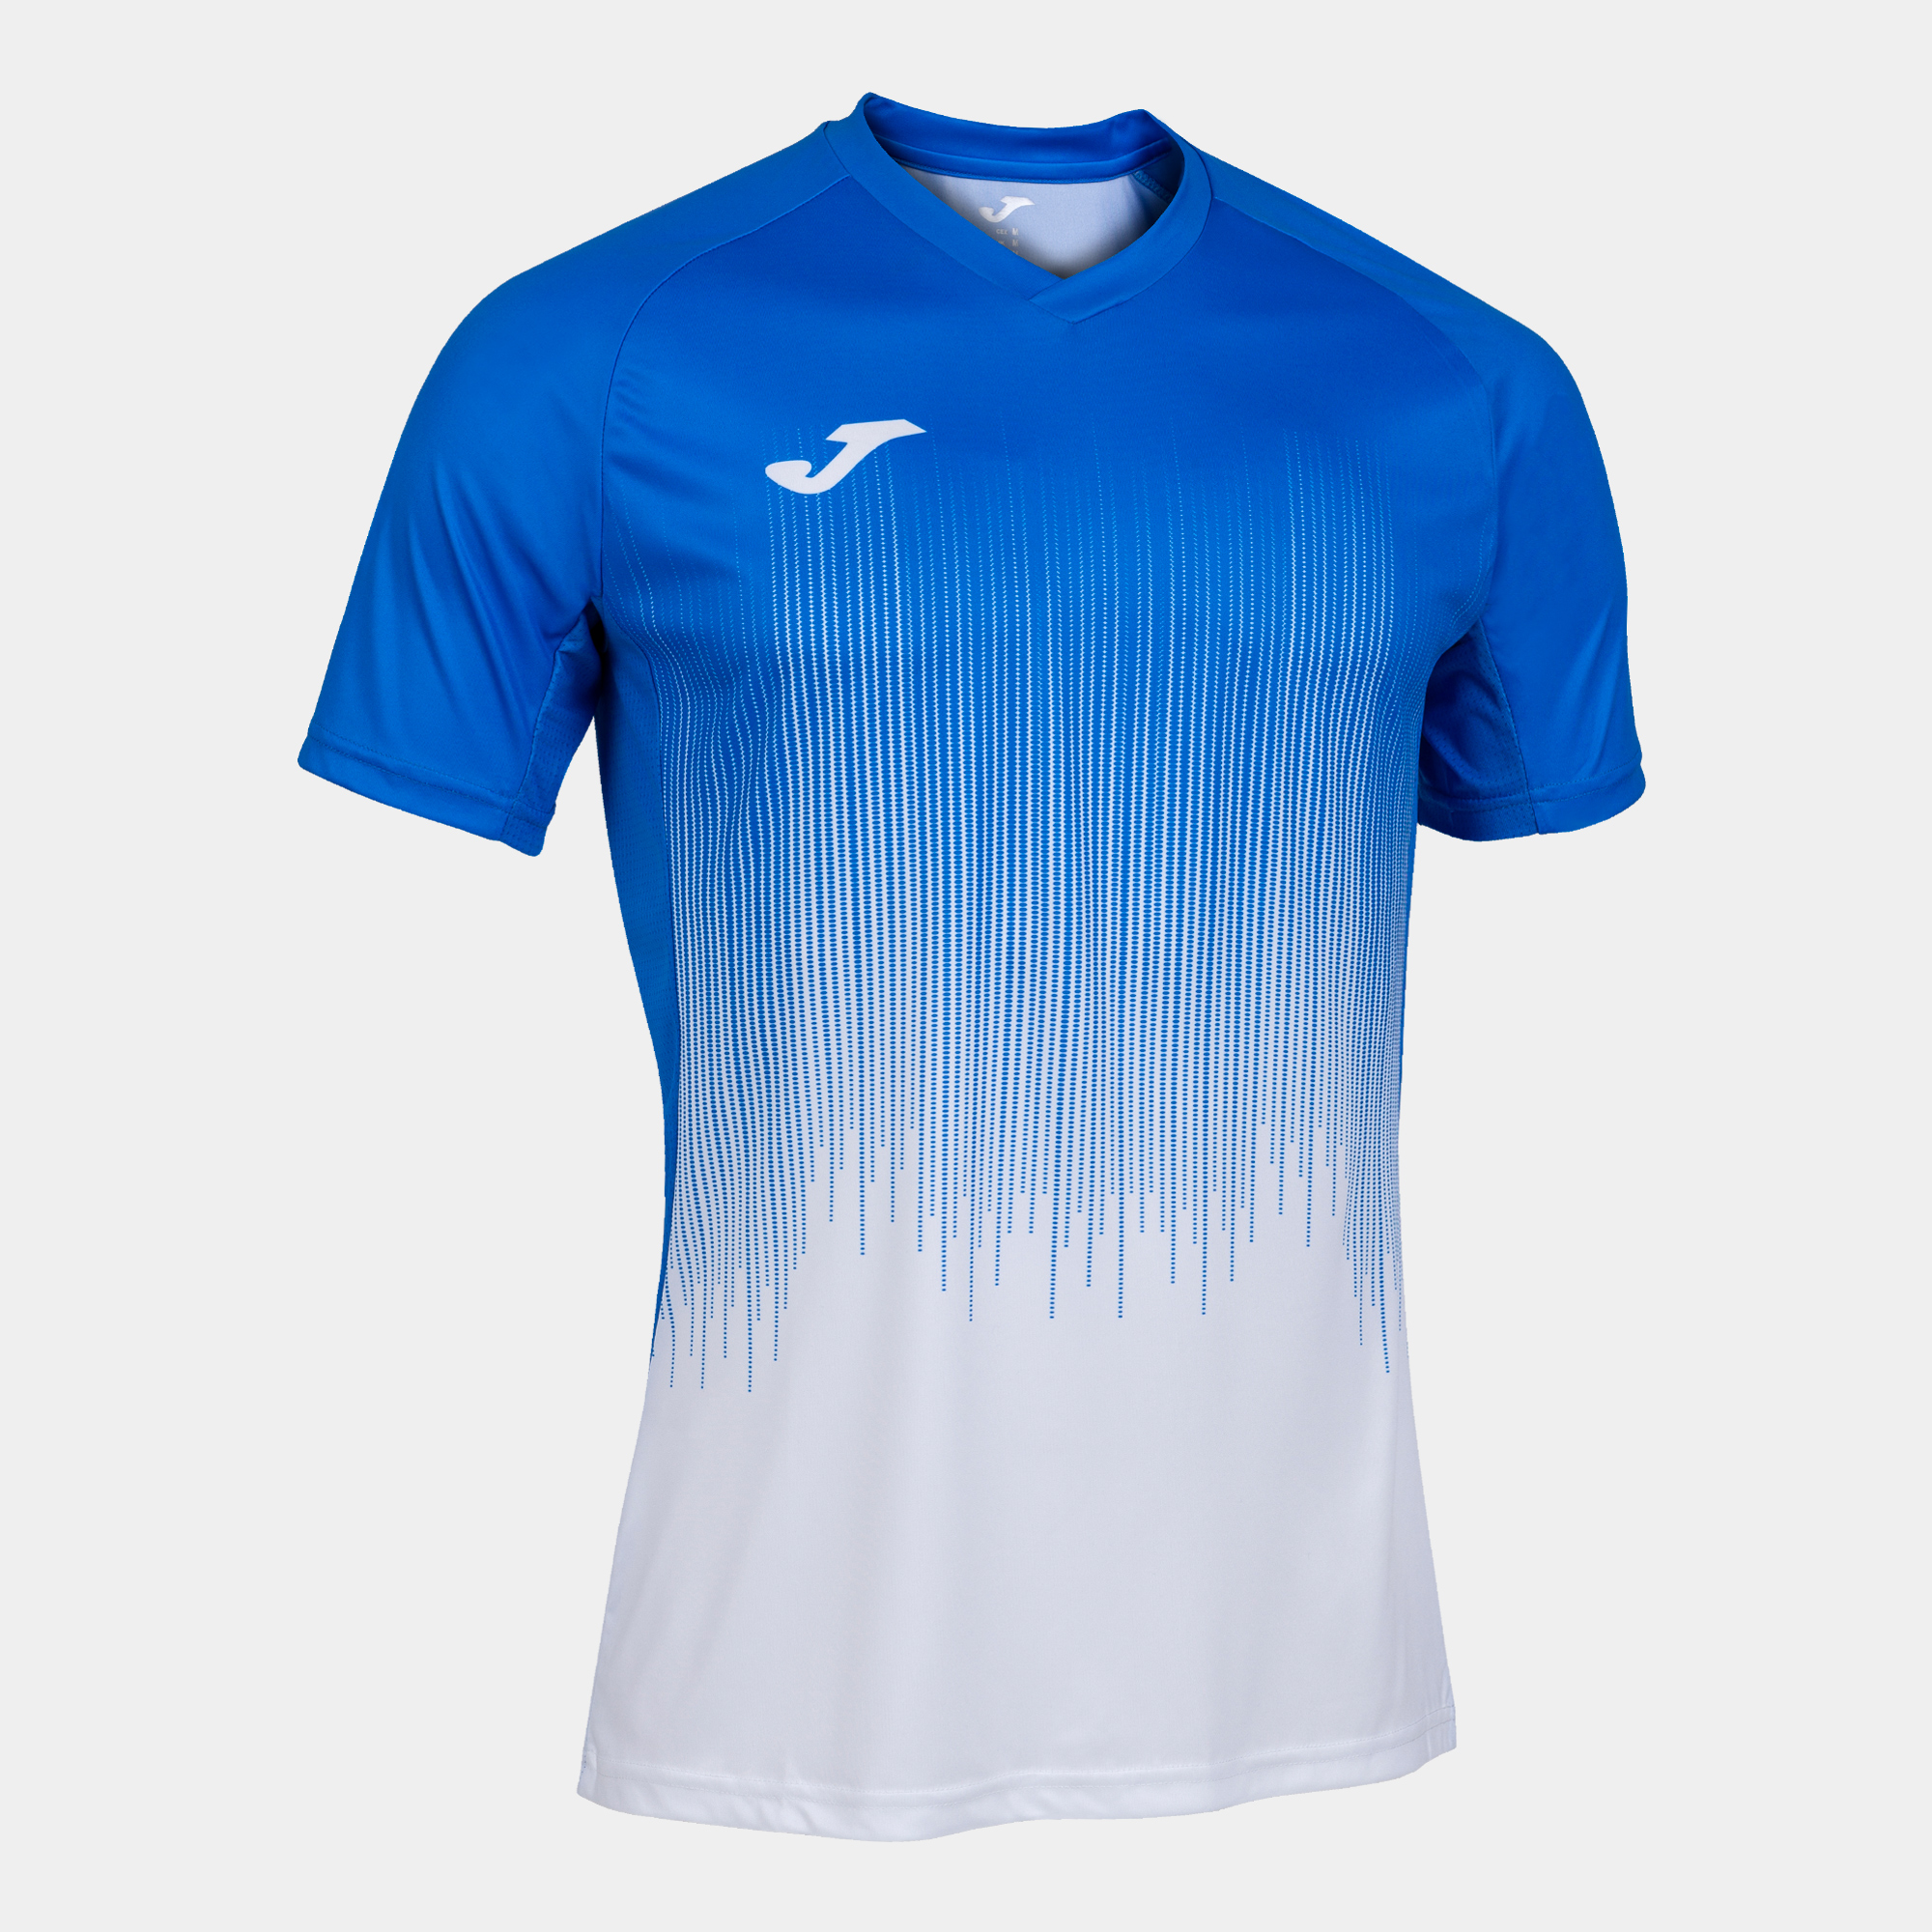 Joma- Maglia T-Shirt Calcio-Pallavolo-Calcetto-Tennis-Padel Joma Maglia  Tiger IV